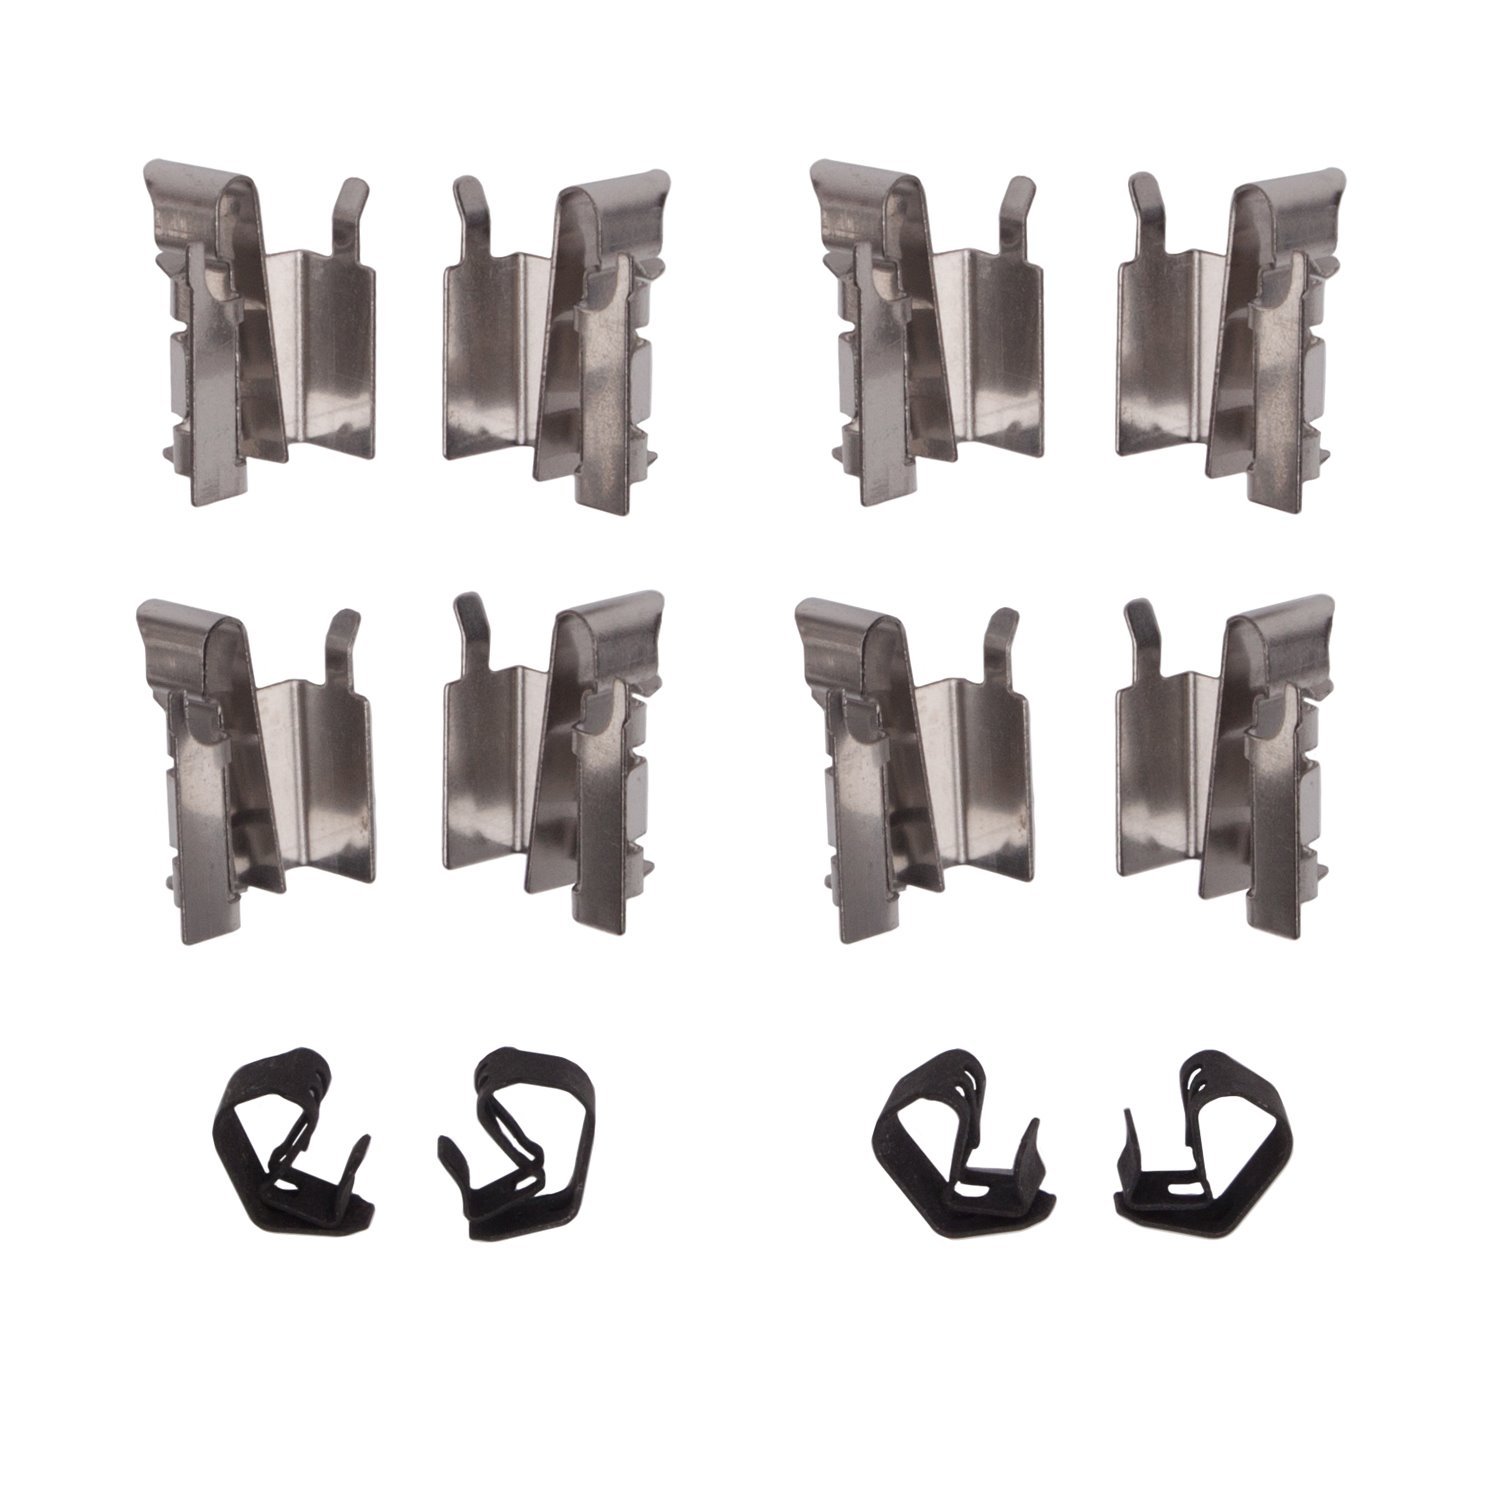 Disc Brake Hardware Kit, Fits Select Multiple Makes/Models, Position: Front & Rear